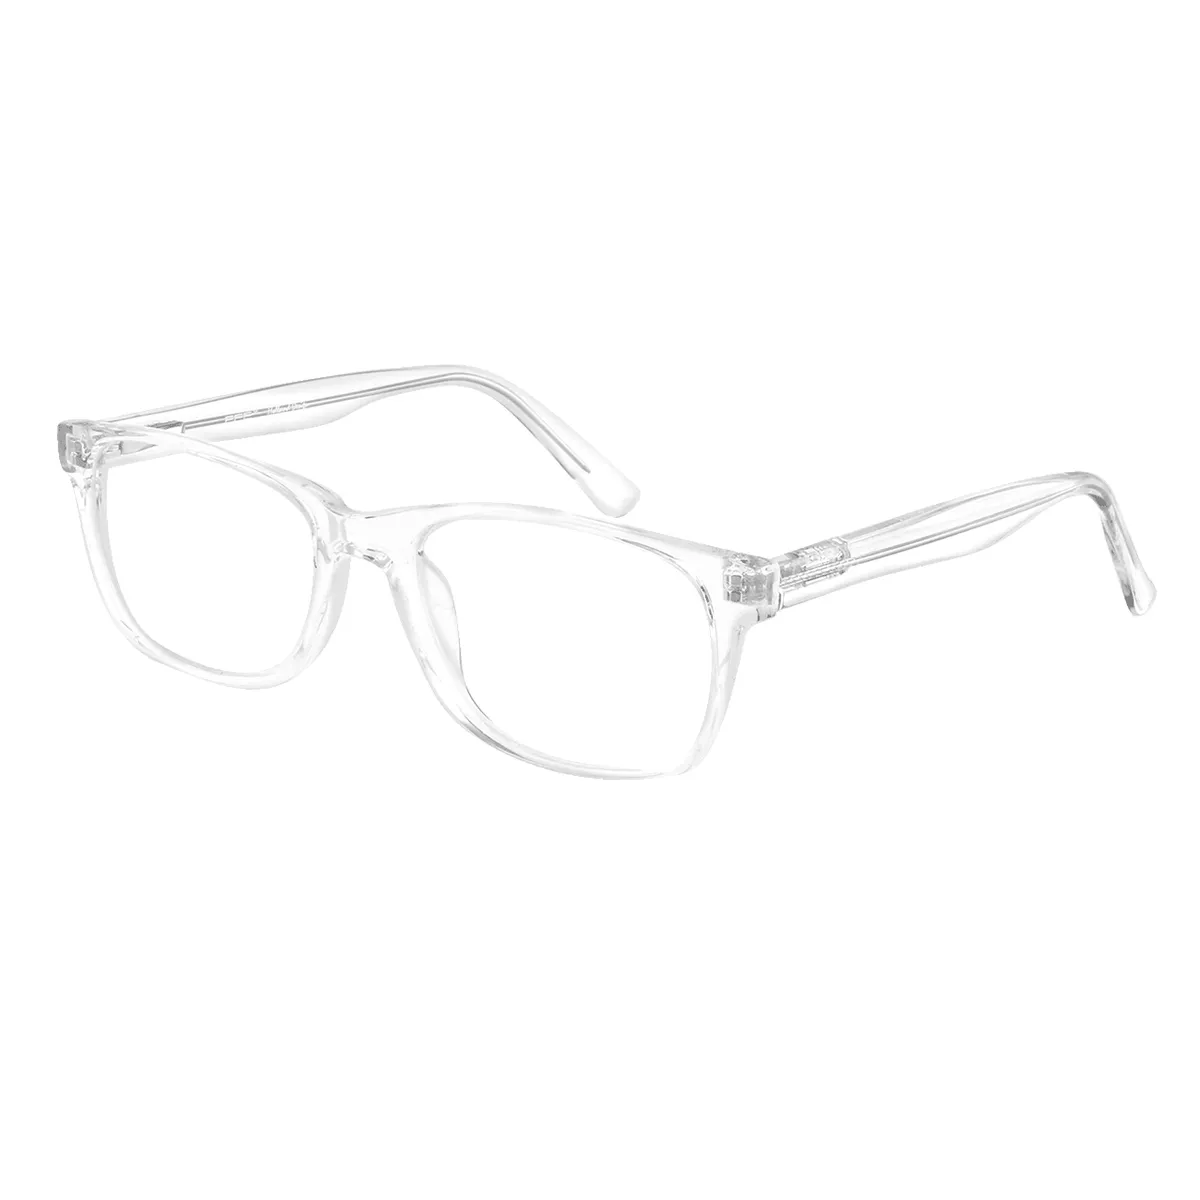 Classic Rectangle Black Eyeglasses for Women & Men